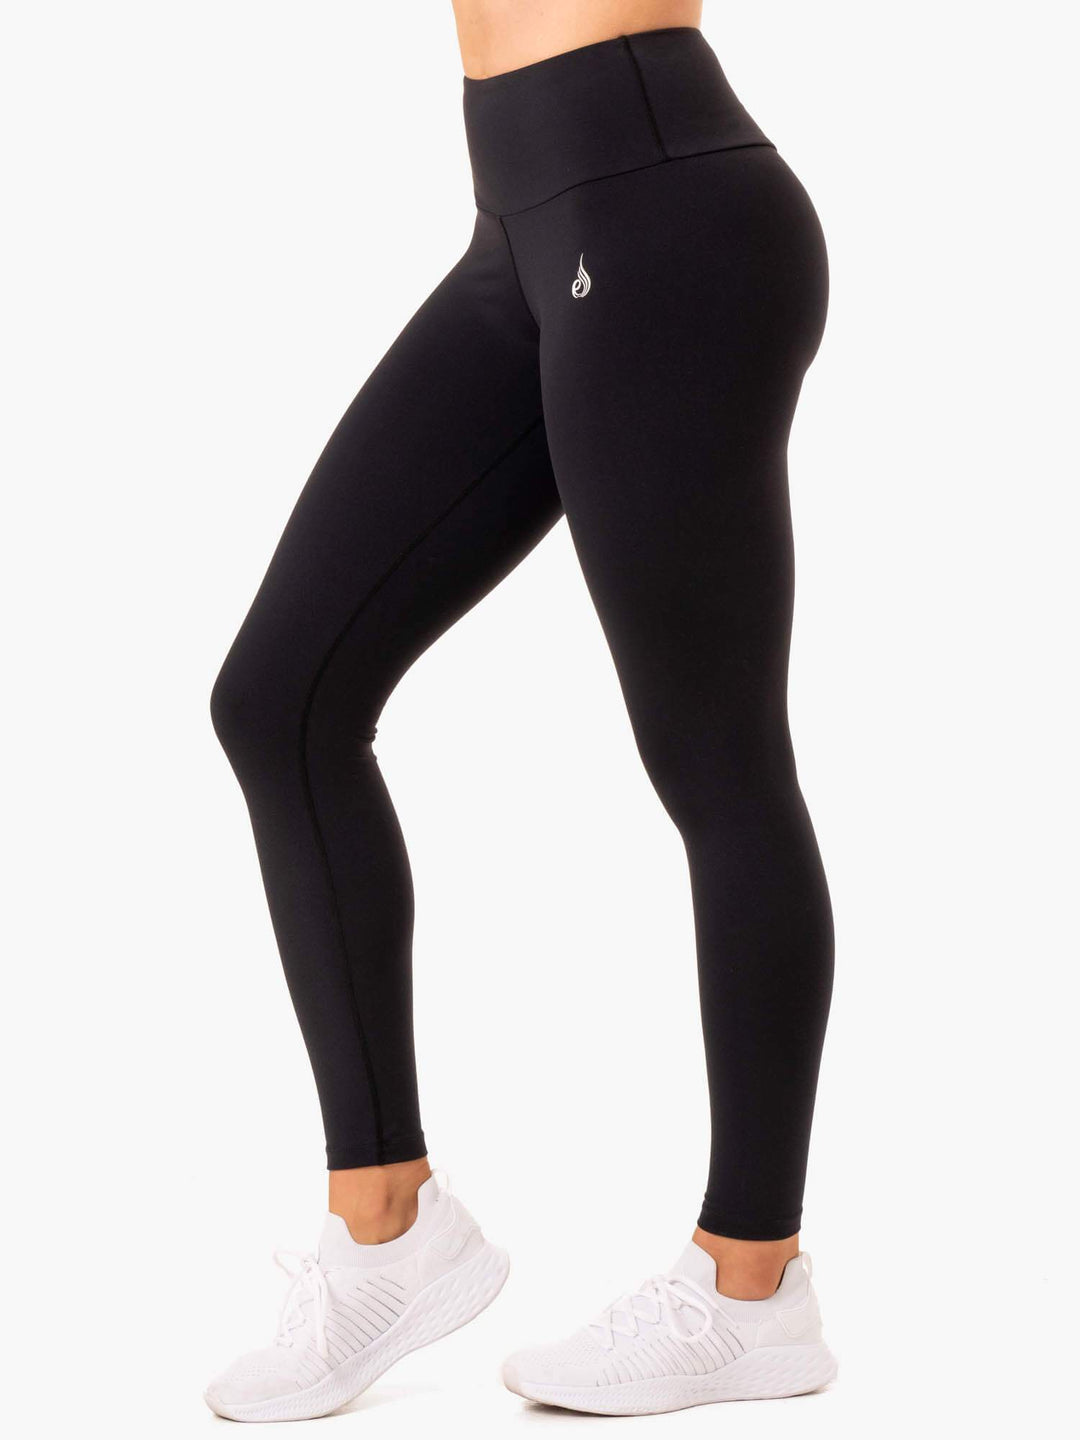 Form Scrunch Bum Shorts - Black - Ryderwear